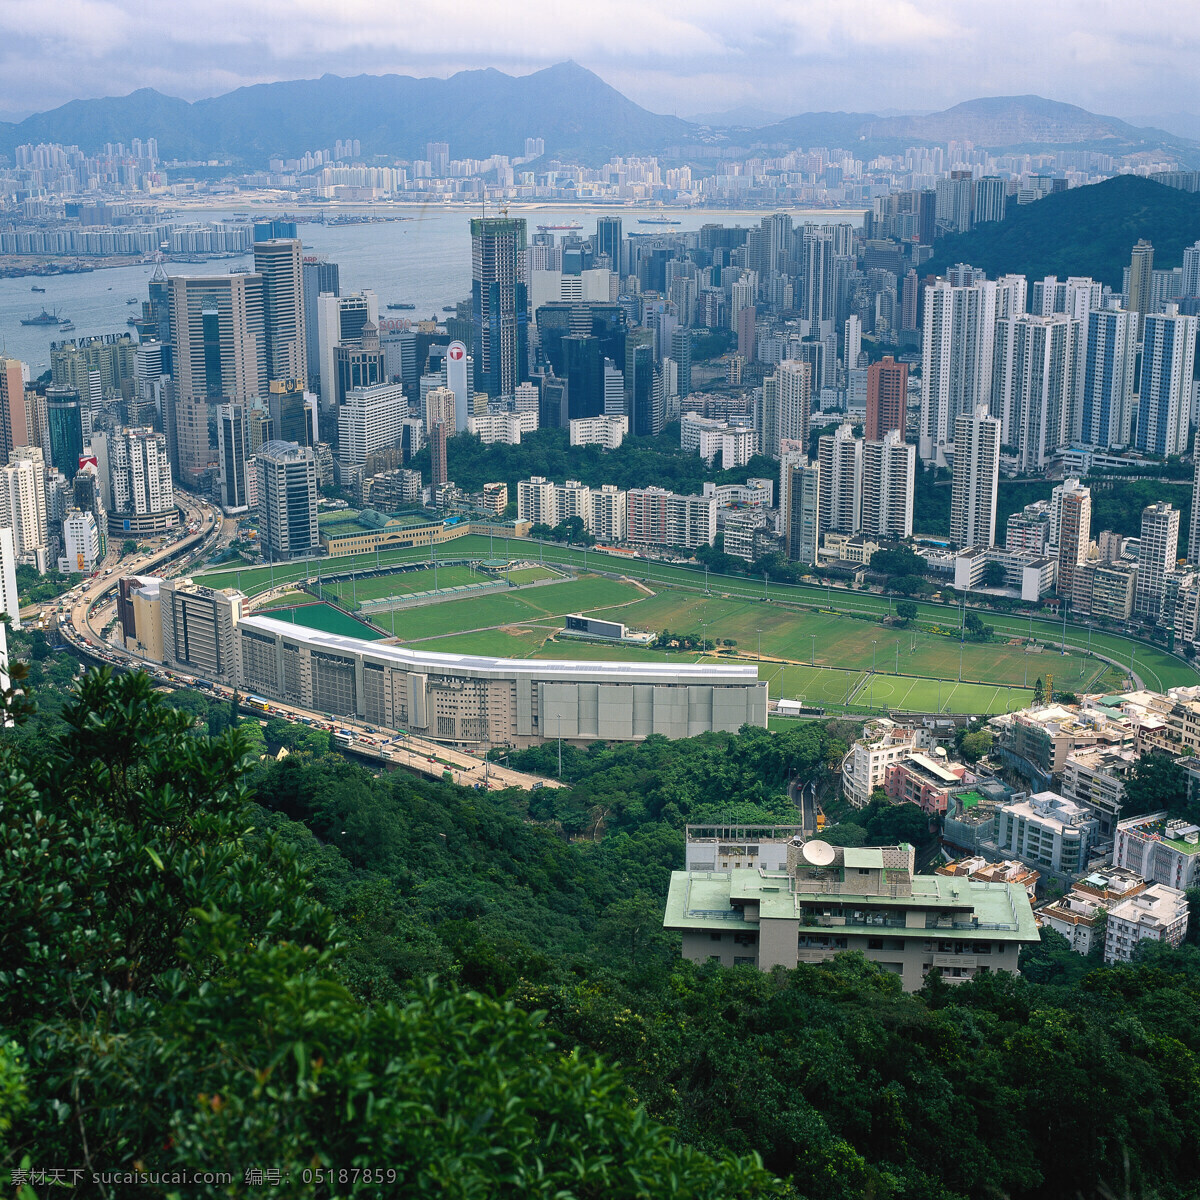 香港俯视图 高楼大厦 道路 交通 汽车 香港 香港文化 香港风光 香港摄影 摄影图 旅游摄影 国内旅游 香港风景 摄影图库 上海 北海 自然景观 建筑景观